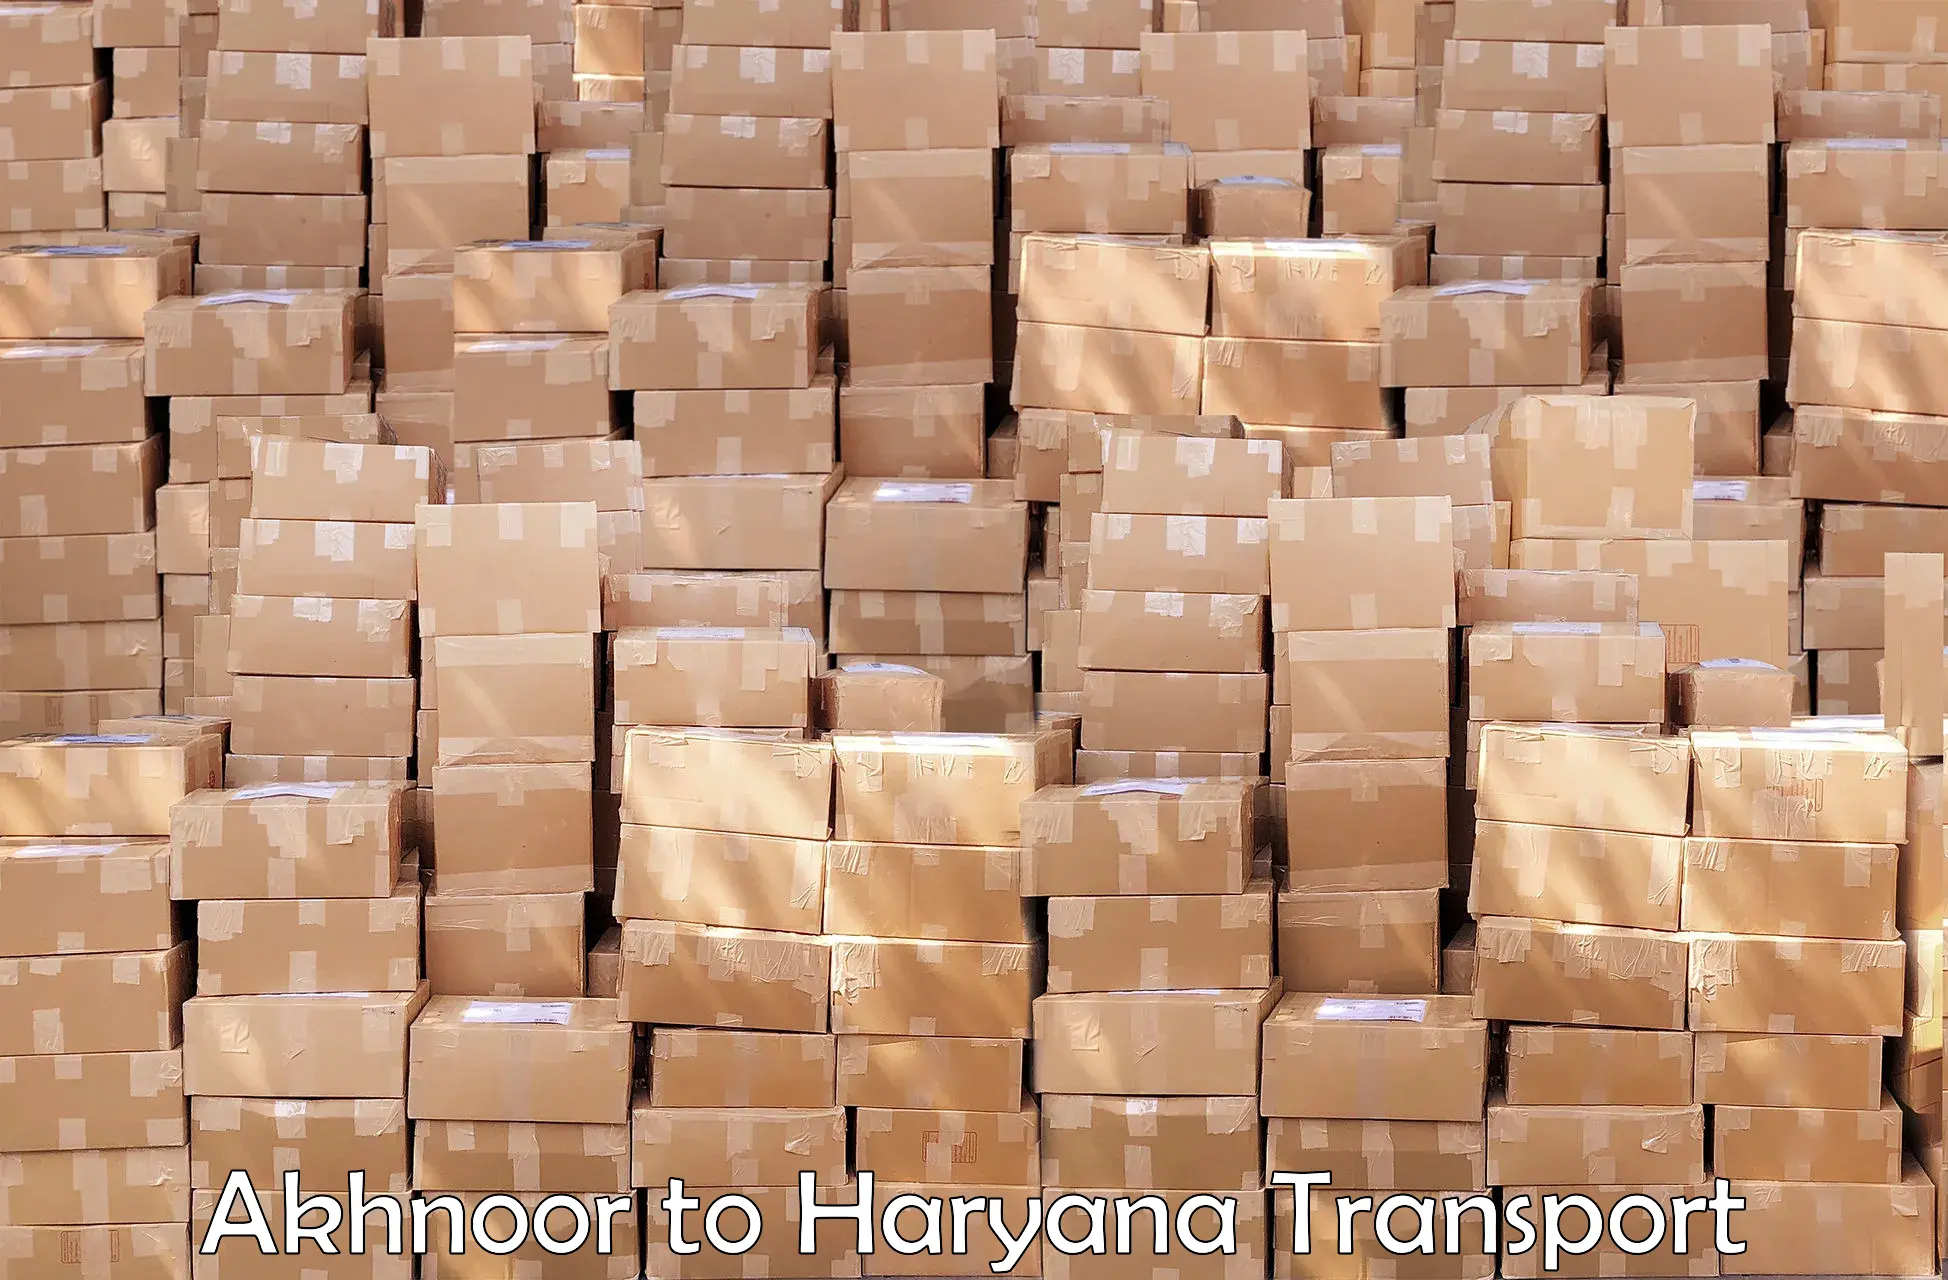 Furniture transport service in Akhnoor to Odhan